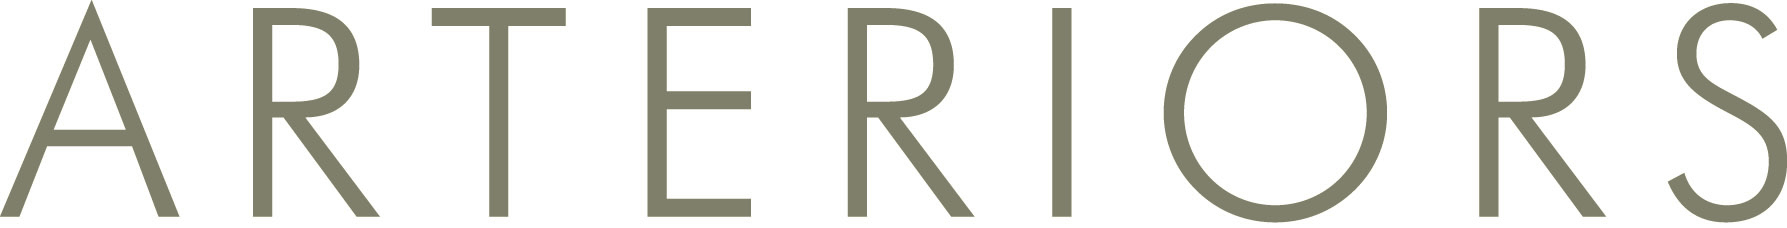 Arteriors-logo.jpg